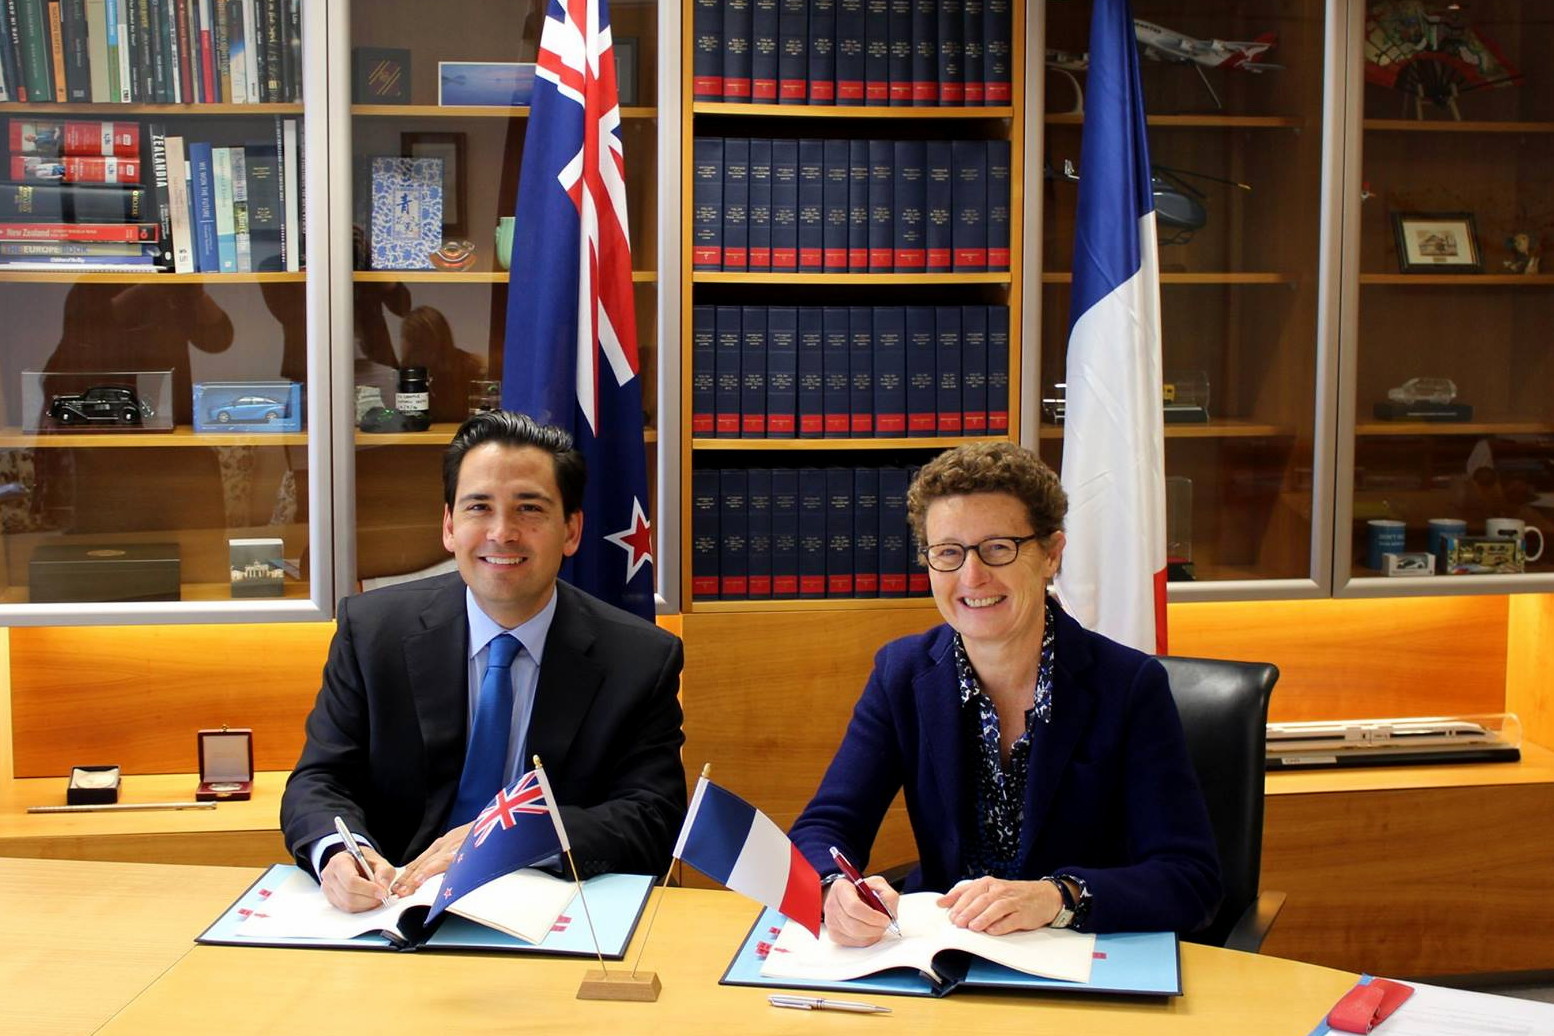 L’accord relatif au transport aérien entre le Gouvernement de la République française et le Gouvernement de la Nouvelle-Zélande a été signé le 22 septembre 2015 entre Simon Bridges et Mme Florence Jeanblanc-Risler, Ambassadrice de France en Nouvelle-Zélande